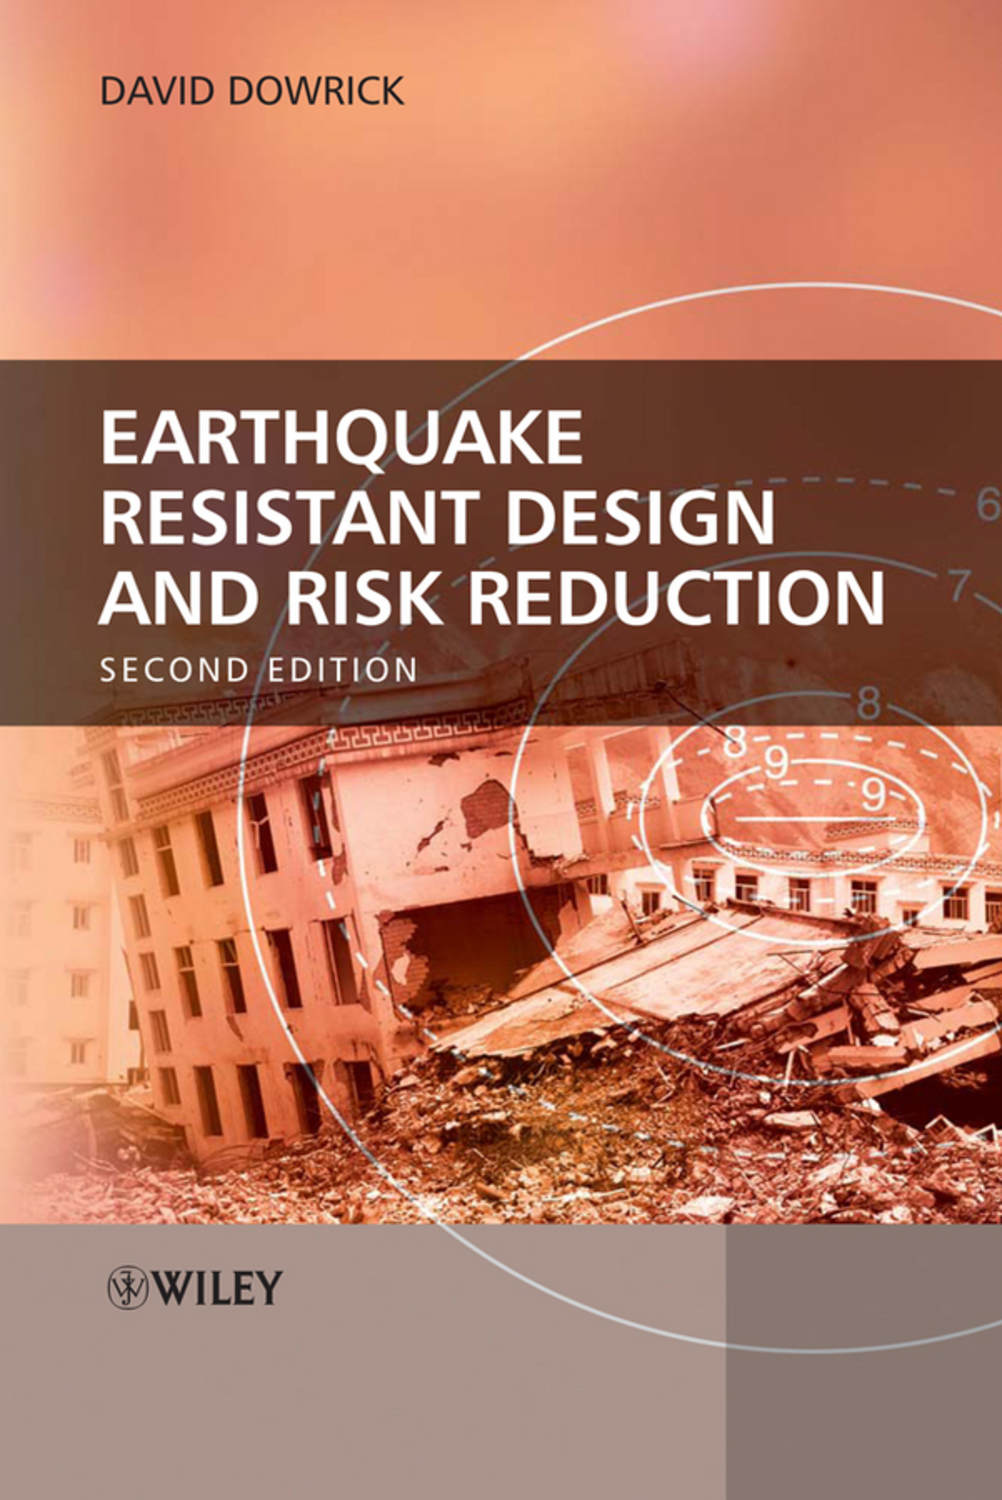 Землетрясение книга. Earthquake Resistant. Книги о землетрясениях.